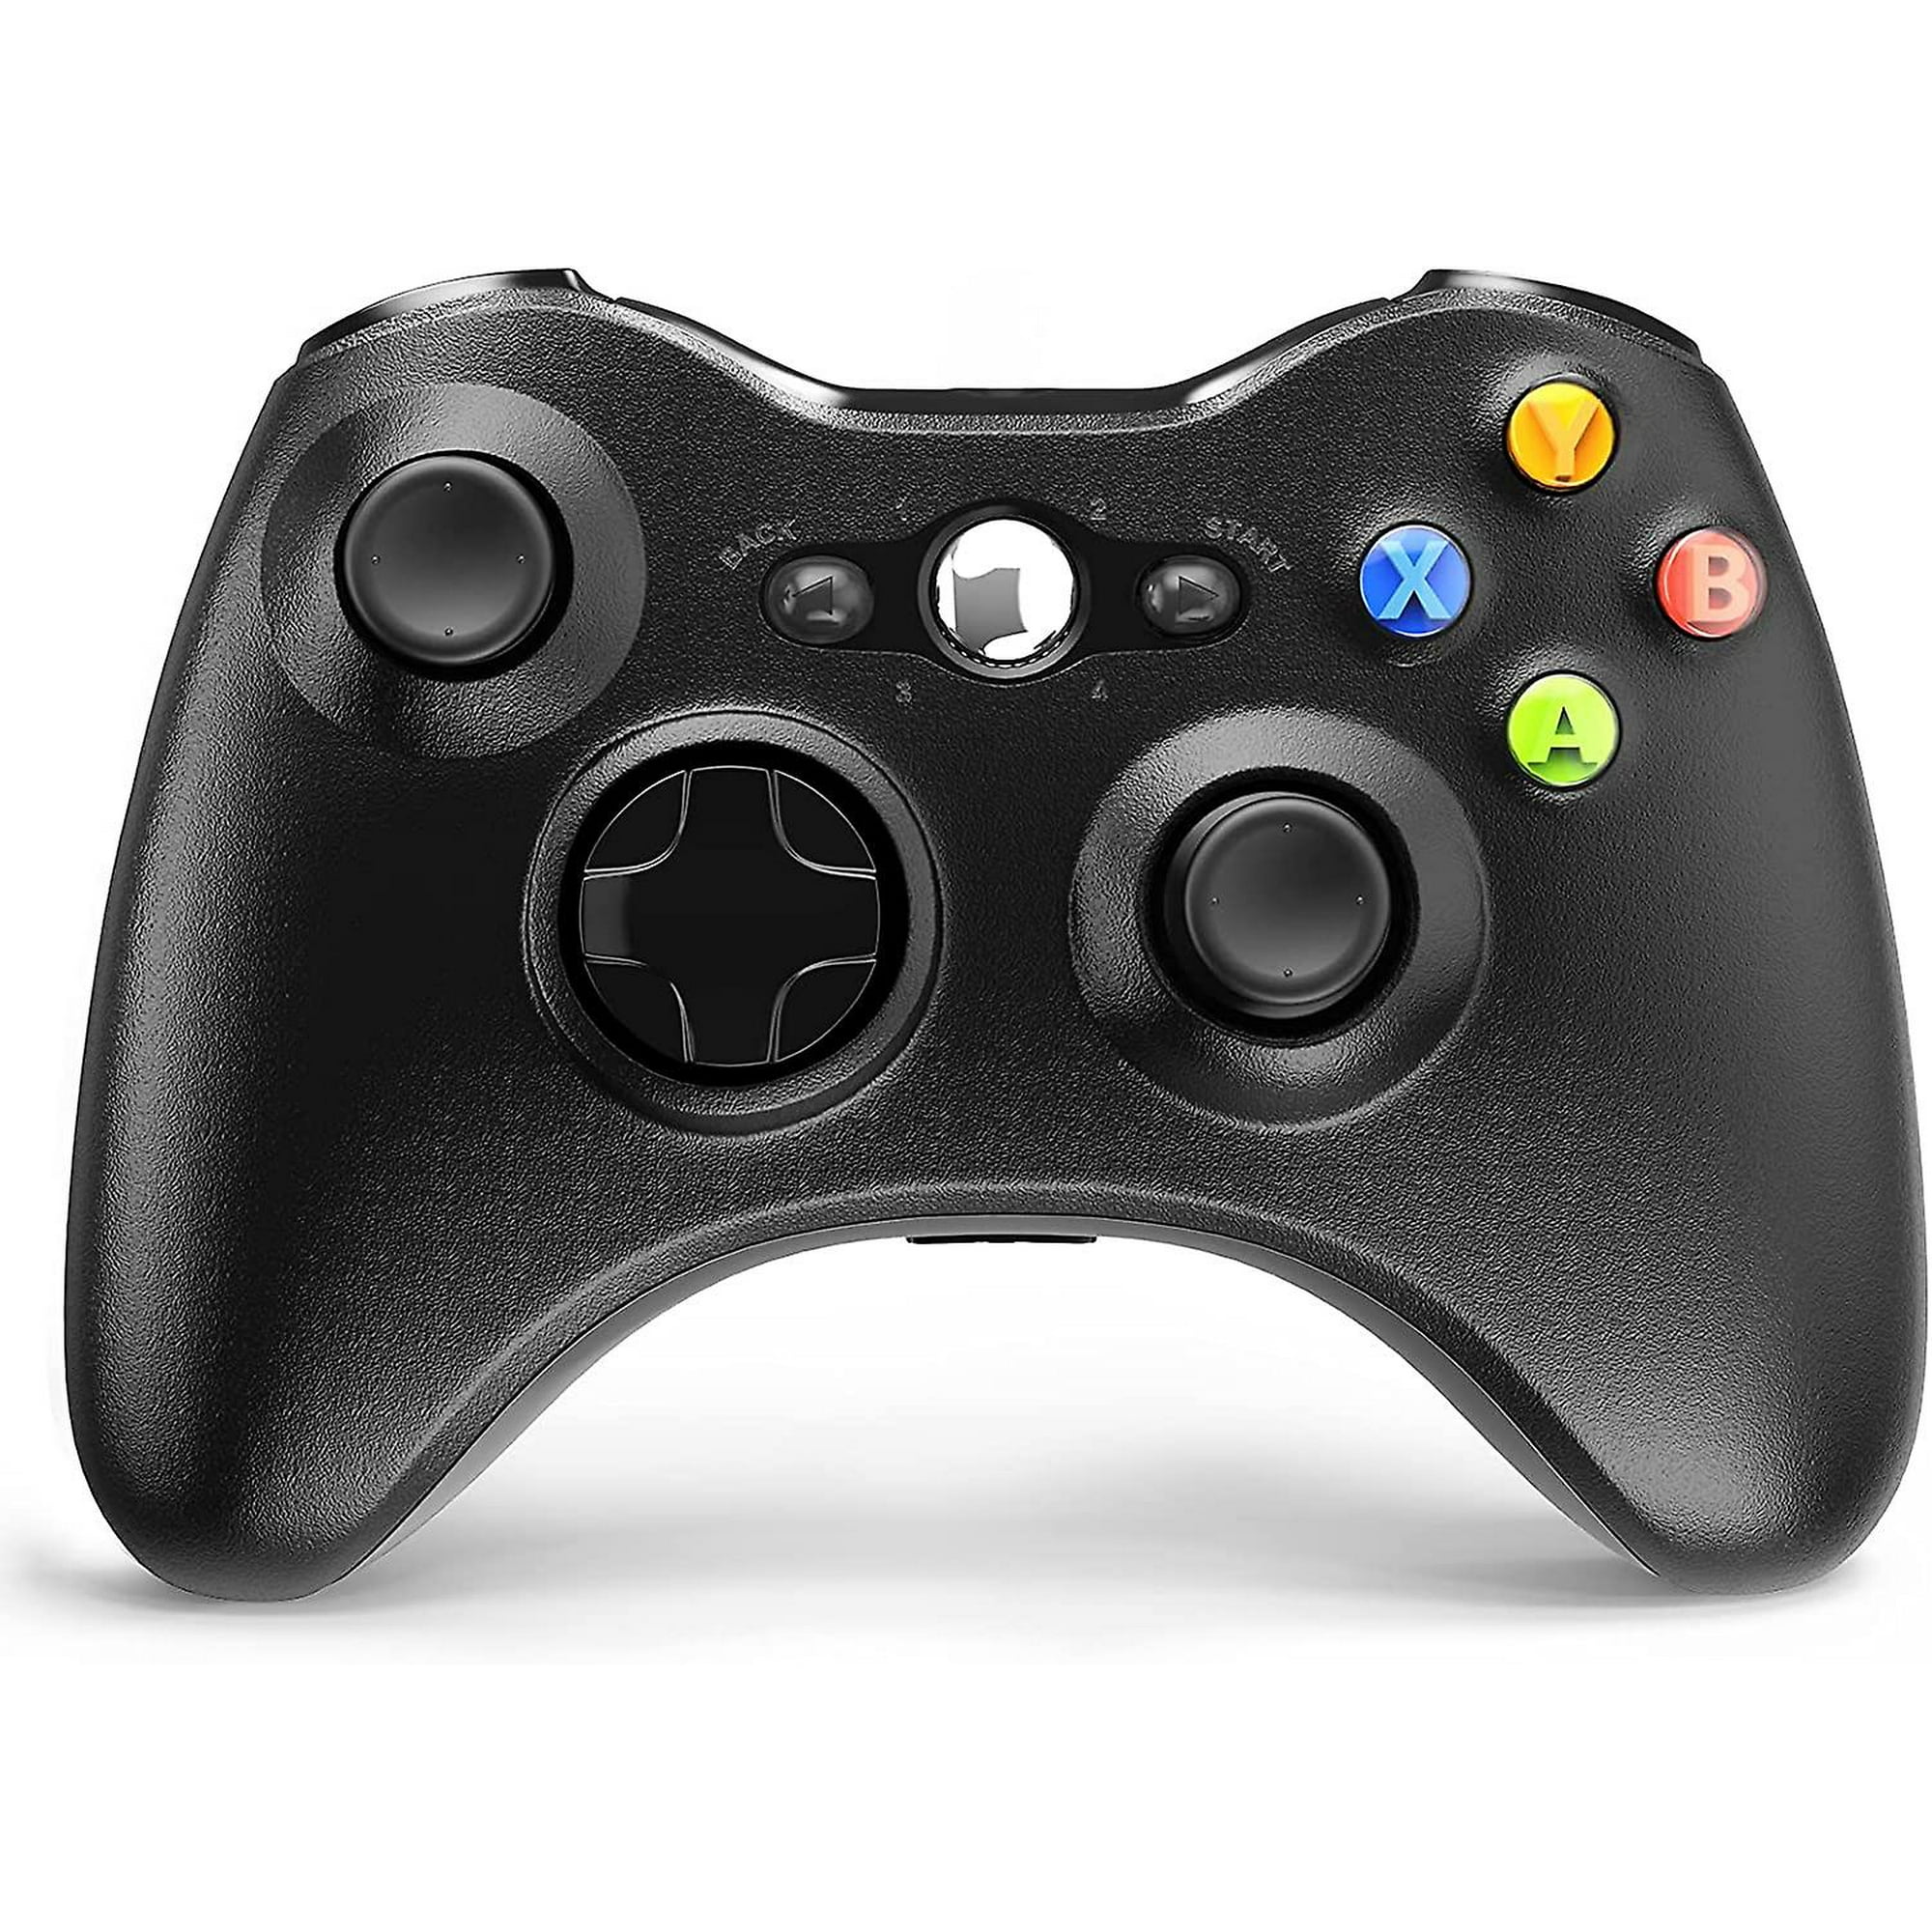  Etpark Xbox 360 - Controlador inalámbrico para Xbox y Slim 360  PC Windows 7, 8, 10 (2,4 GHZ), color negro : Videojuegos